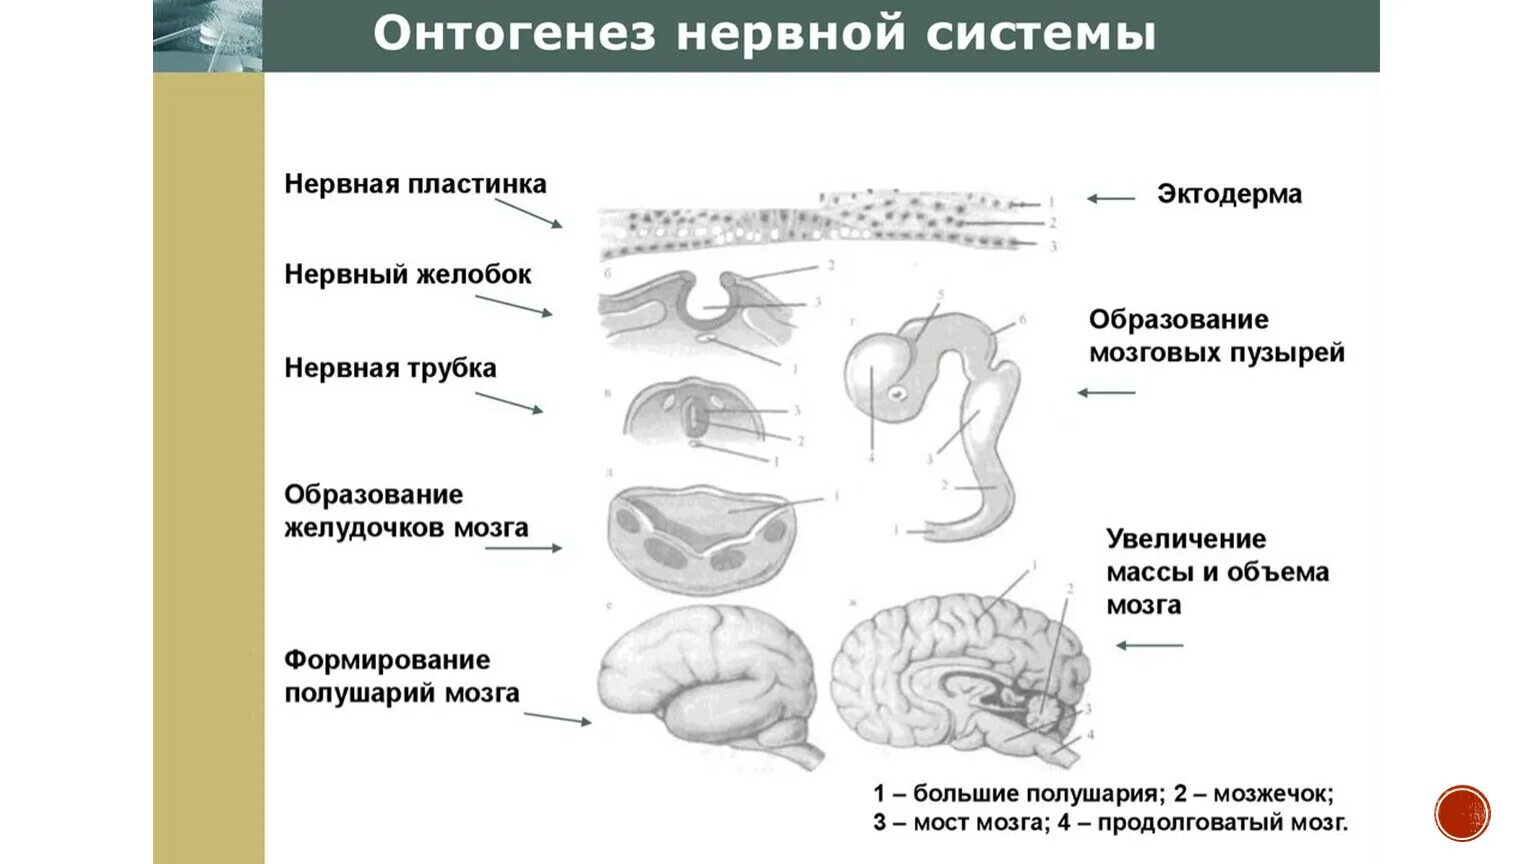 Развитие нервной системы и поведения. Основные этапы онтогенеза центральной нервной системы человека. Развитие нервной системы в онтогенезе таблица. Основные этапы онтогенеза нервной системы схематично. Онтогенез нервной системы стадии развития.